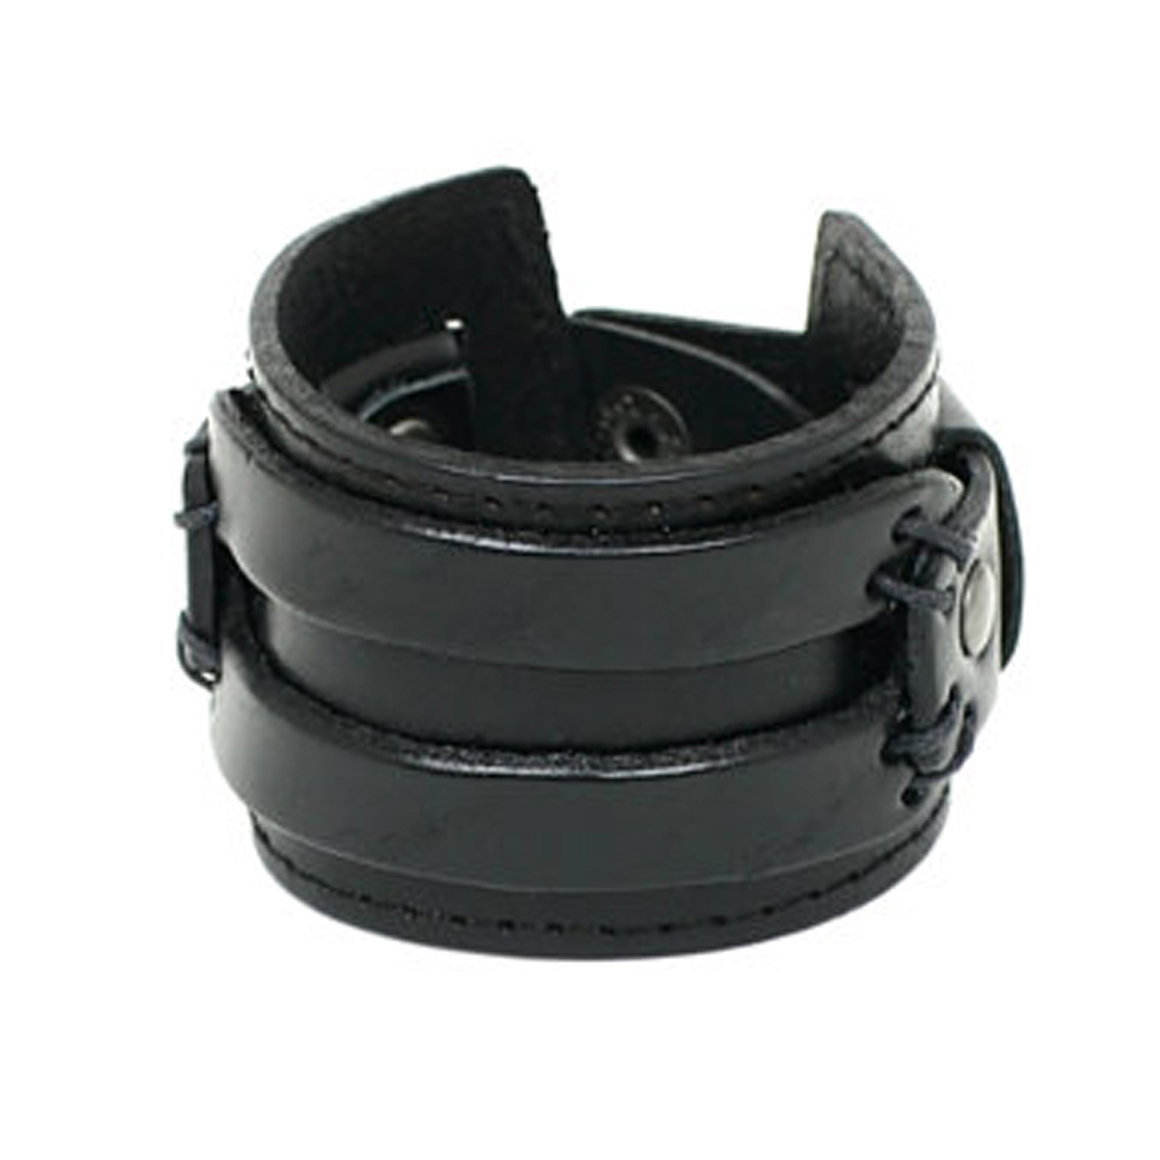 Cuff bracelet,Antique Men's Black Leather Cuff Bracelet, Leather Wrist Band Wristband Handcrafted Jewelry